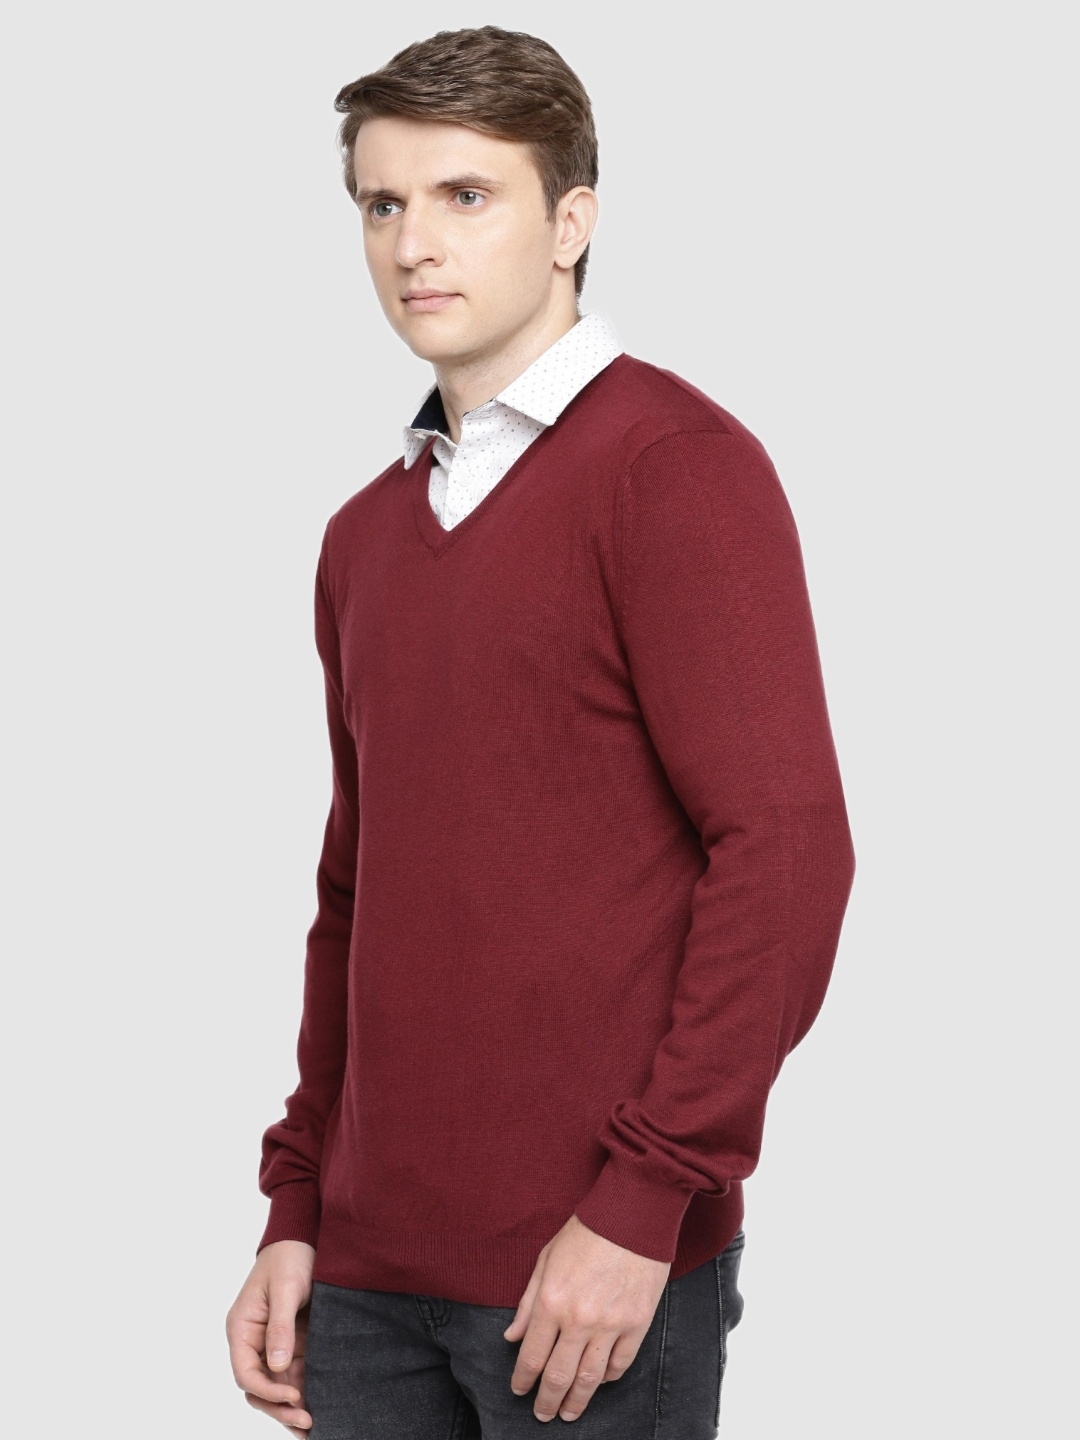 Celio Men's Solid Red Sweater